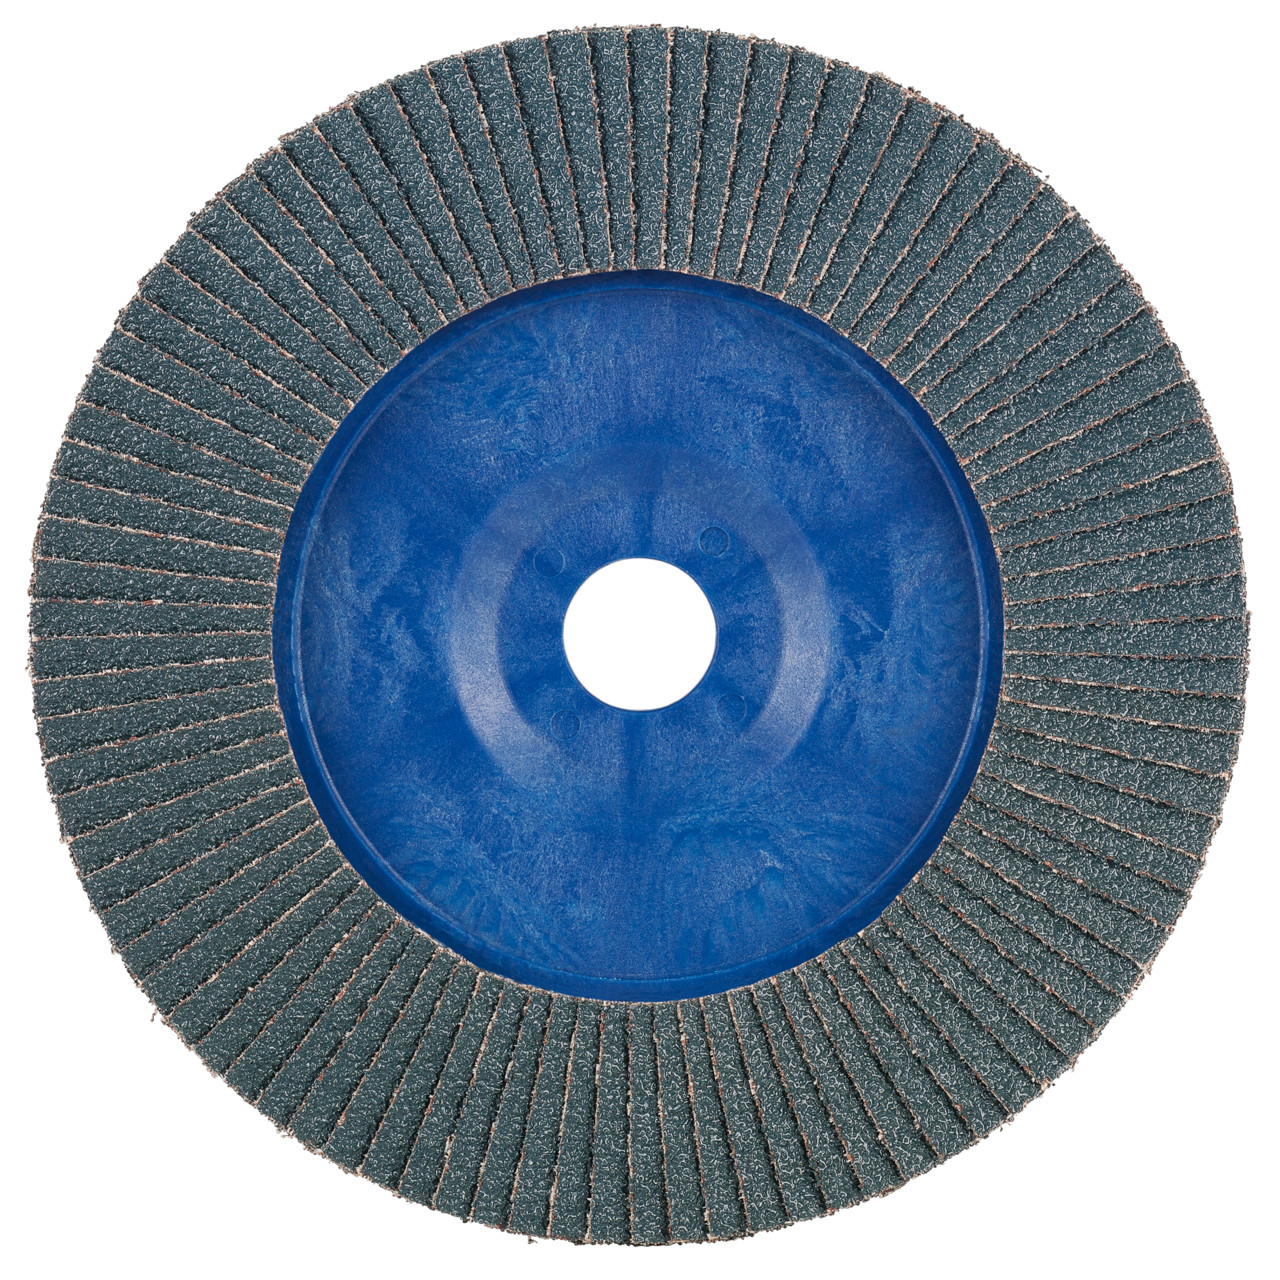 Rondella dentata Tyrolit DxH 115x22.2 2in1 per acciaio e acciaio inox, P40, forma: 28N - versione diritta (corpo portante in plastica), Art. 847917